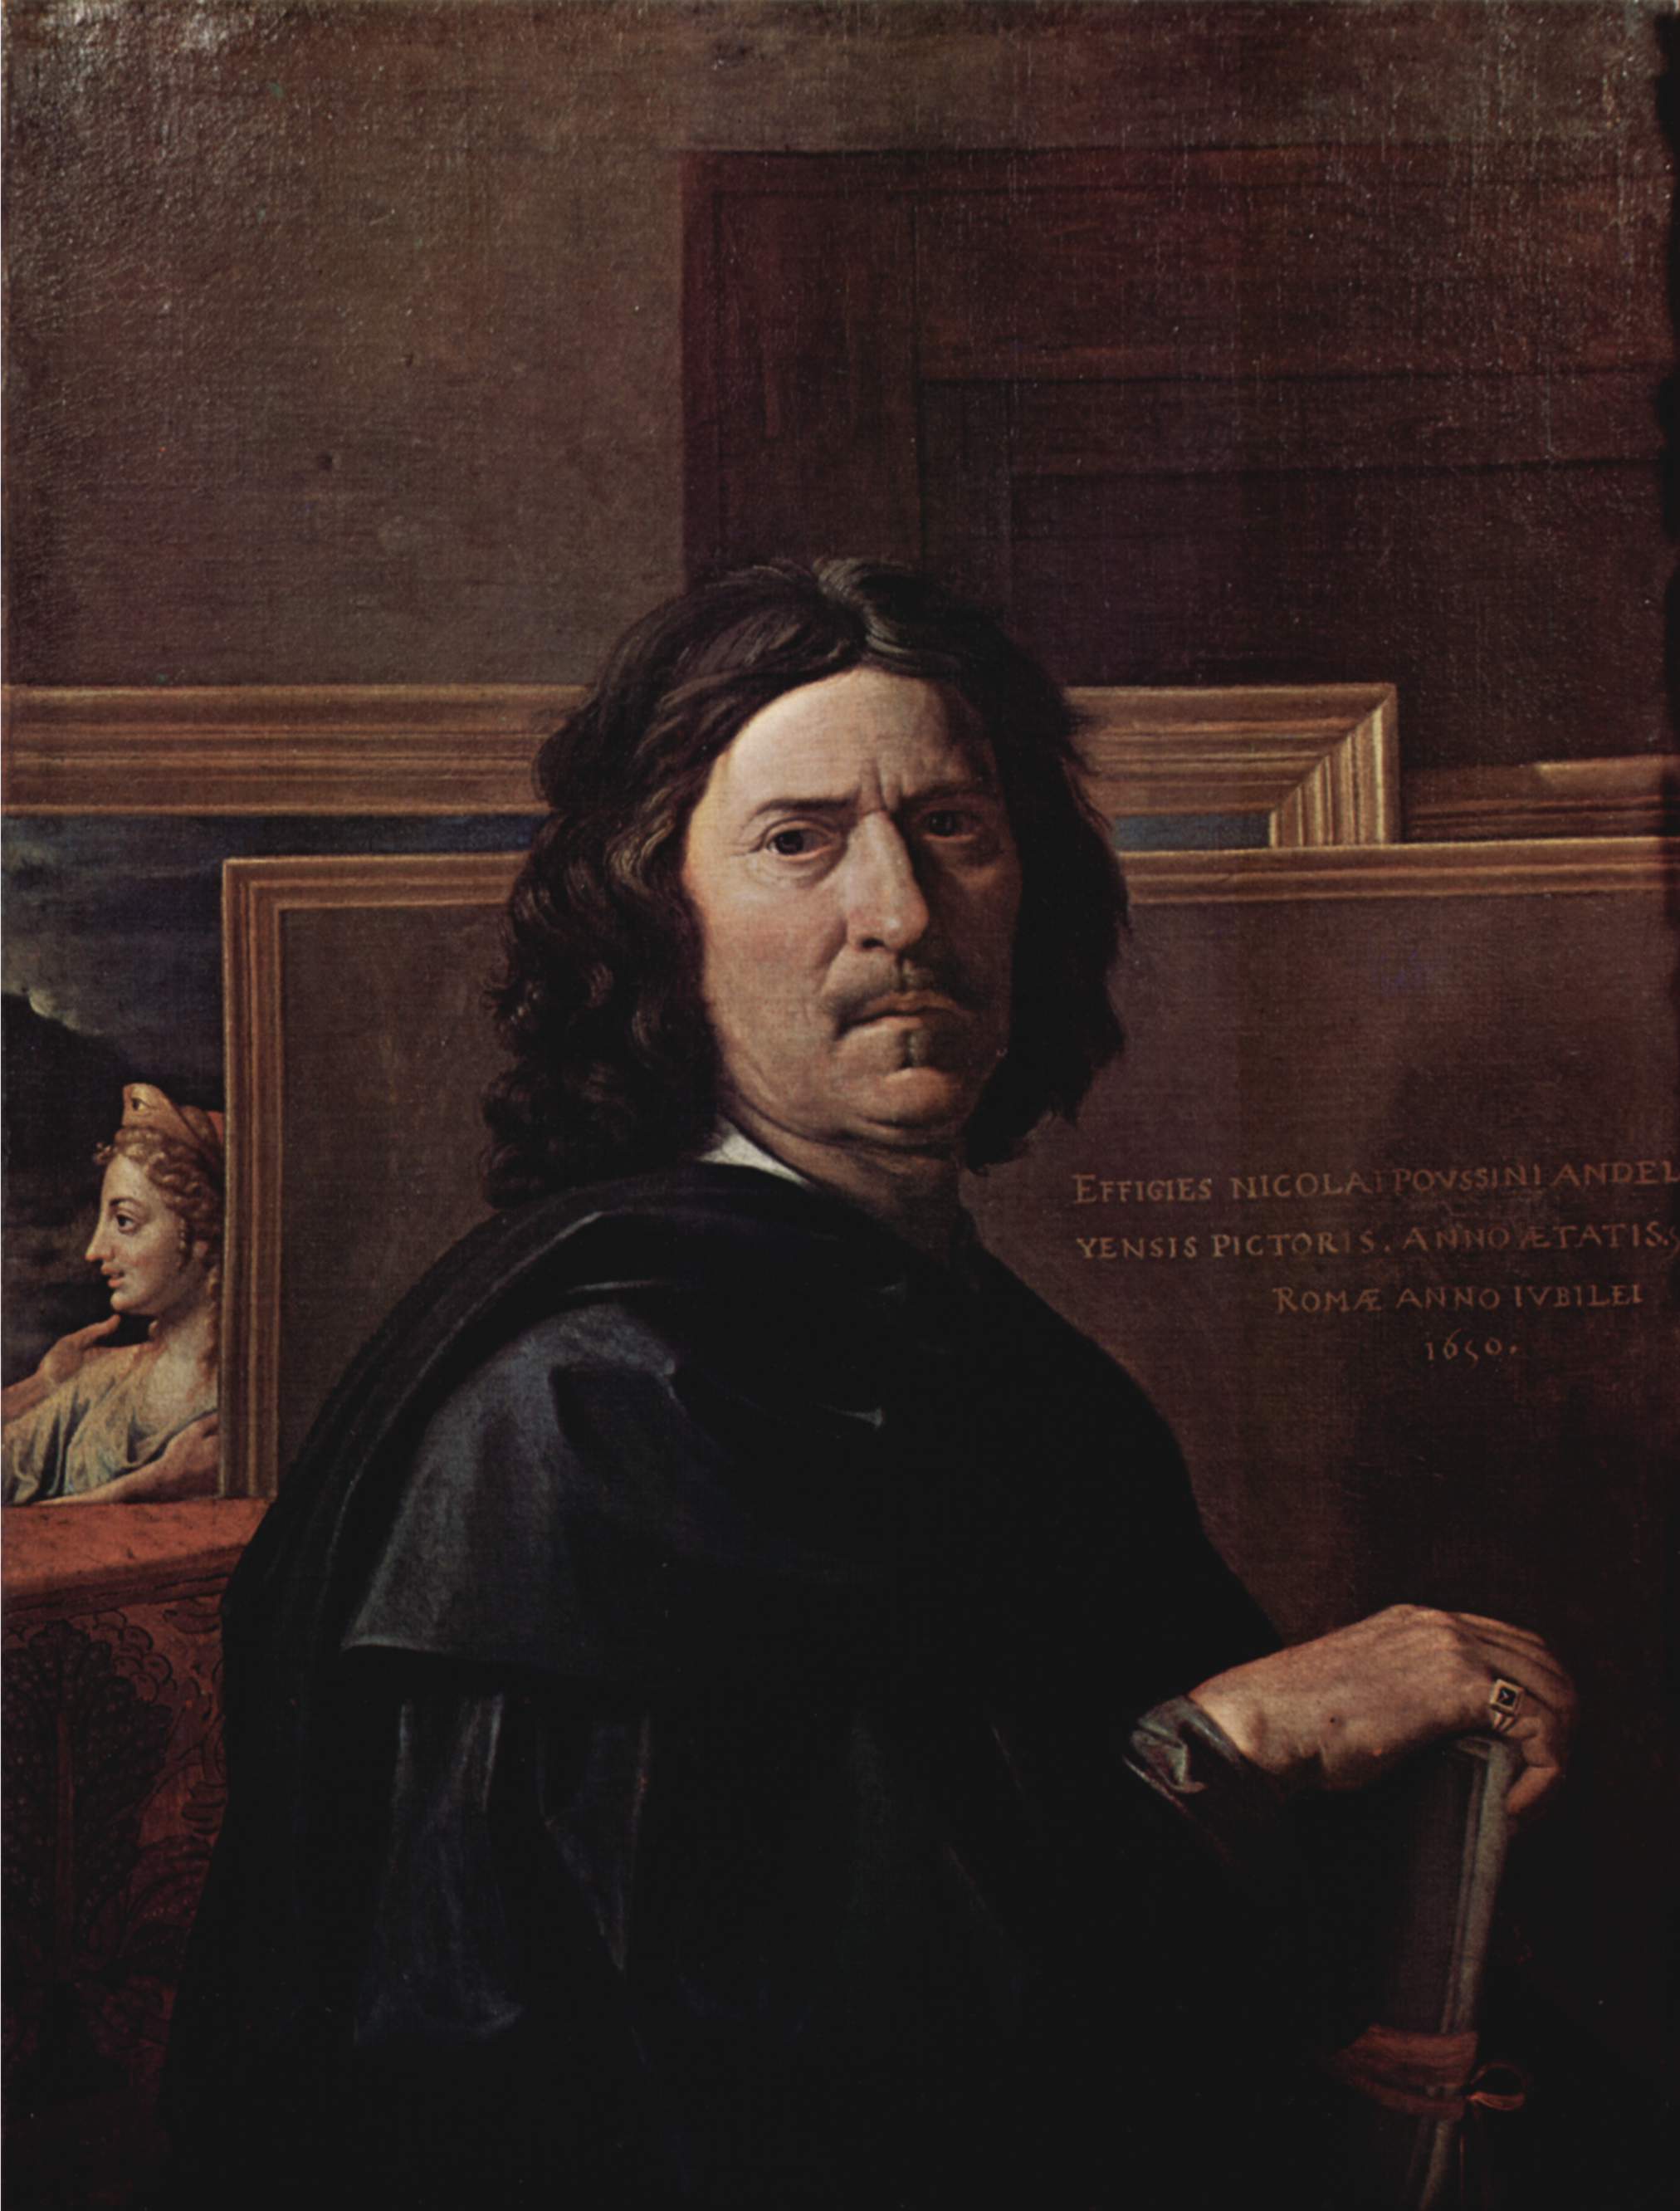 Nicolas_Poussin autoportrait 1650 Louvre